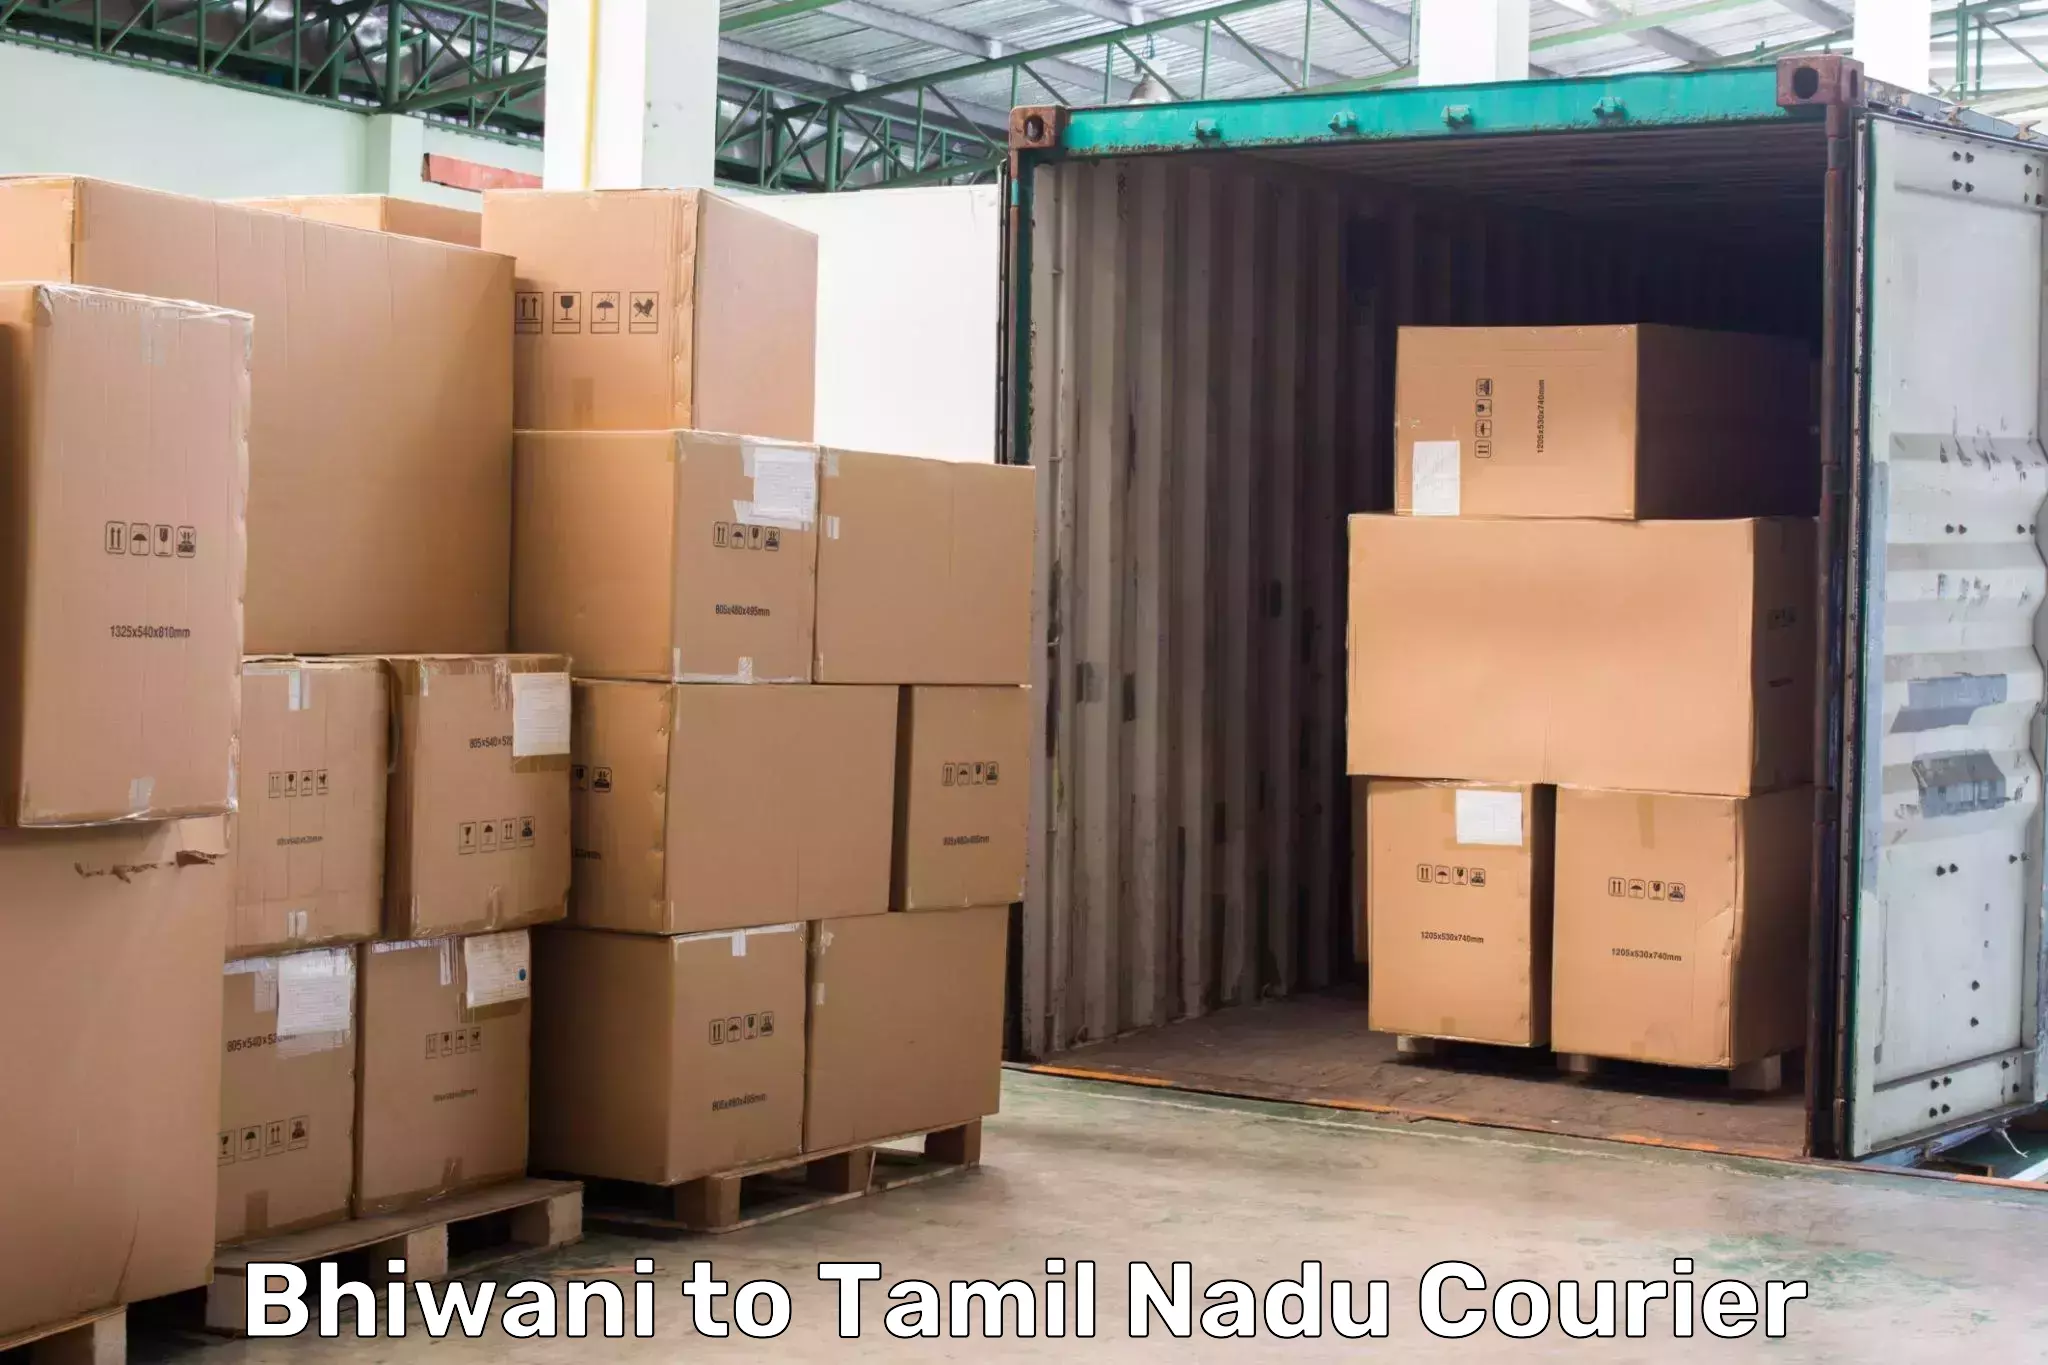 International parcel service Bhiwani to Muthukulathur